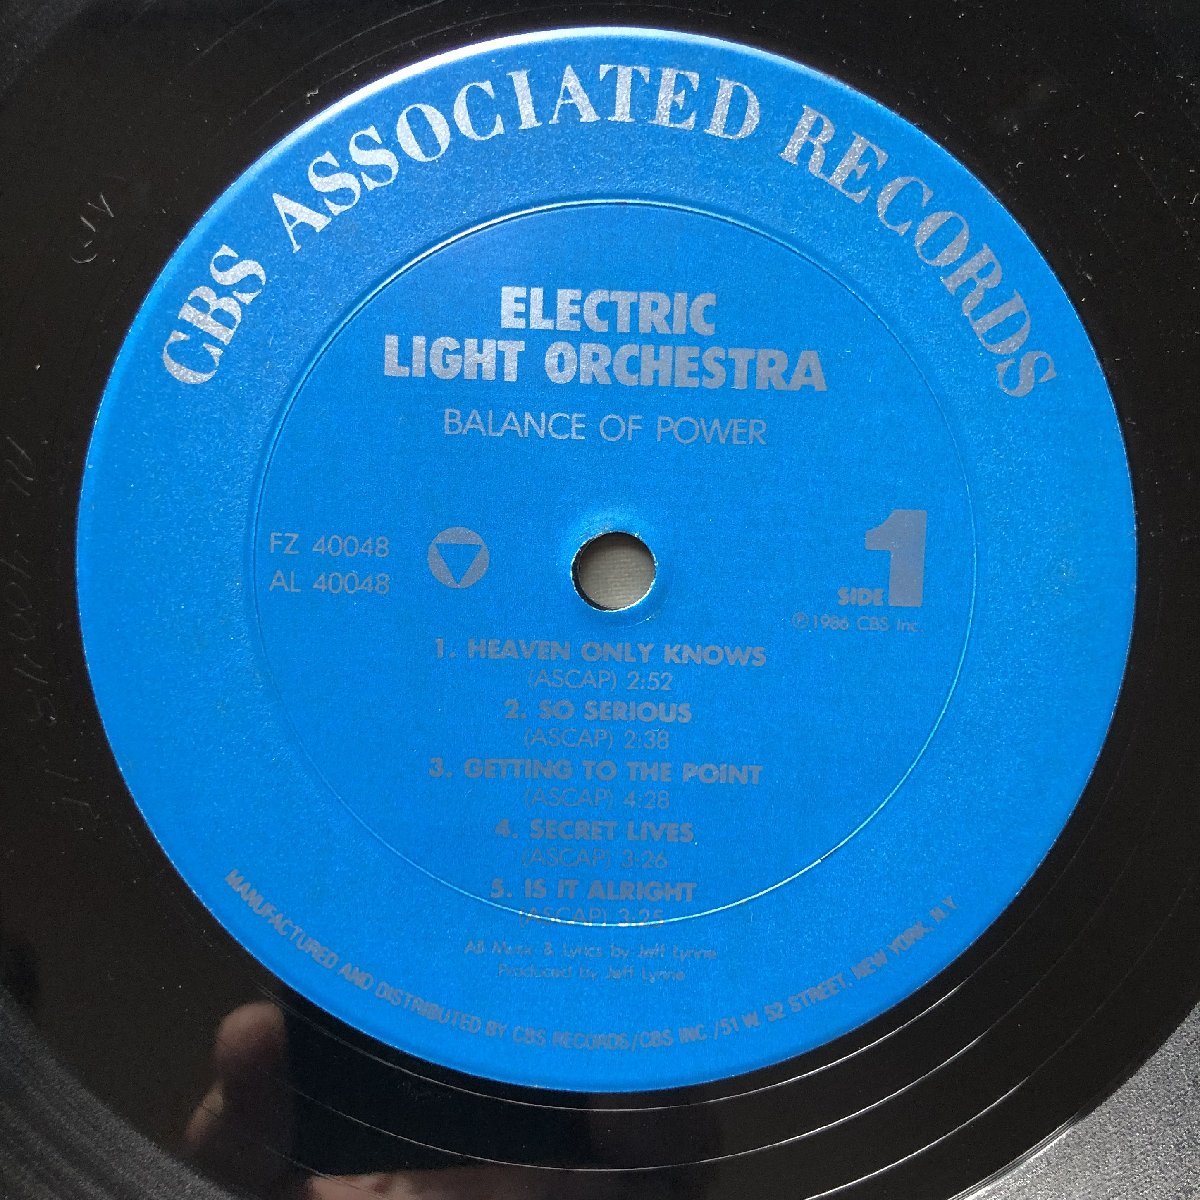 傷なし美盤 良ジャケ STERING刻印 1986年 米国初盤 Electric Light Orchestra (ELO) LPレコード バランス・オブ・パワー Balance Of Power_画像7